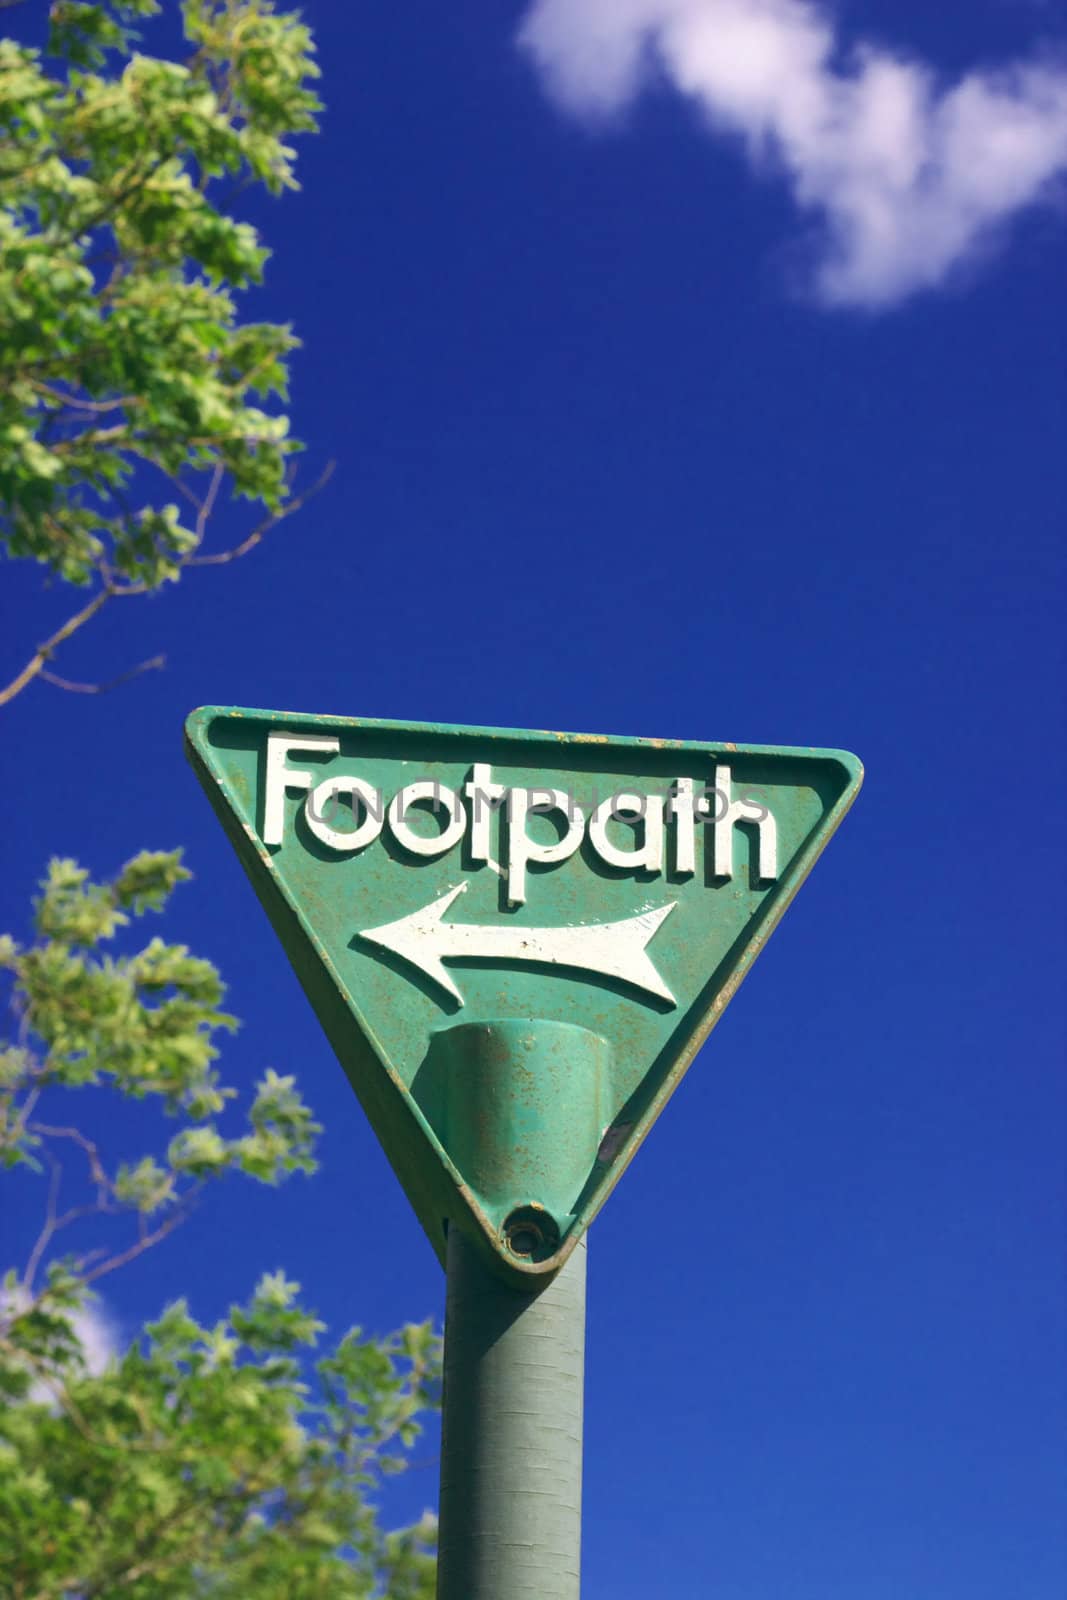 Footpath by hospitalera